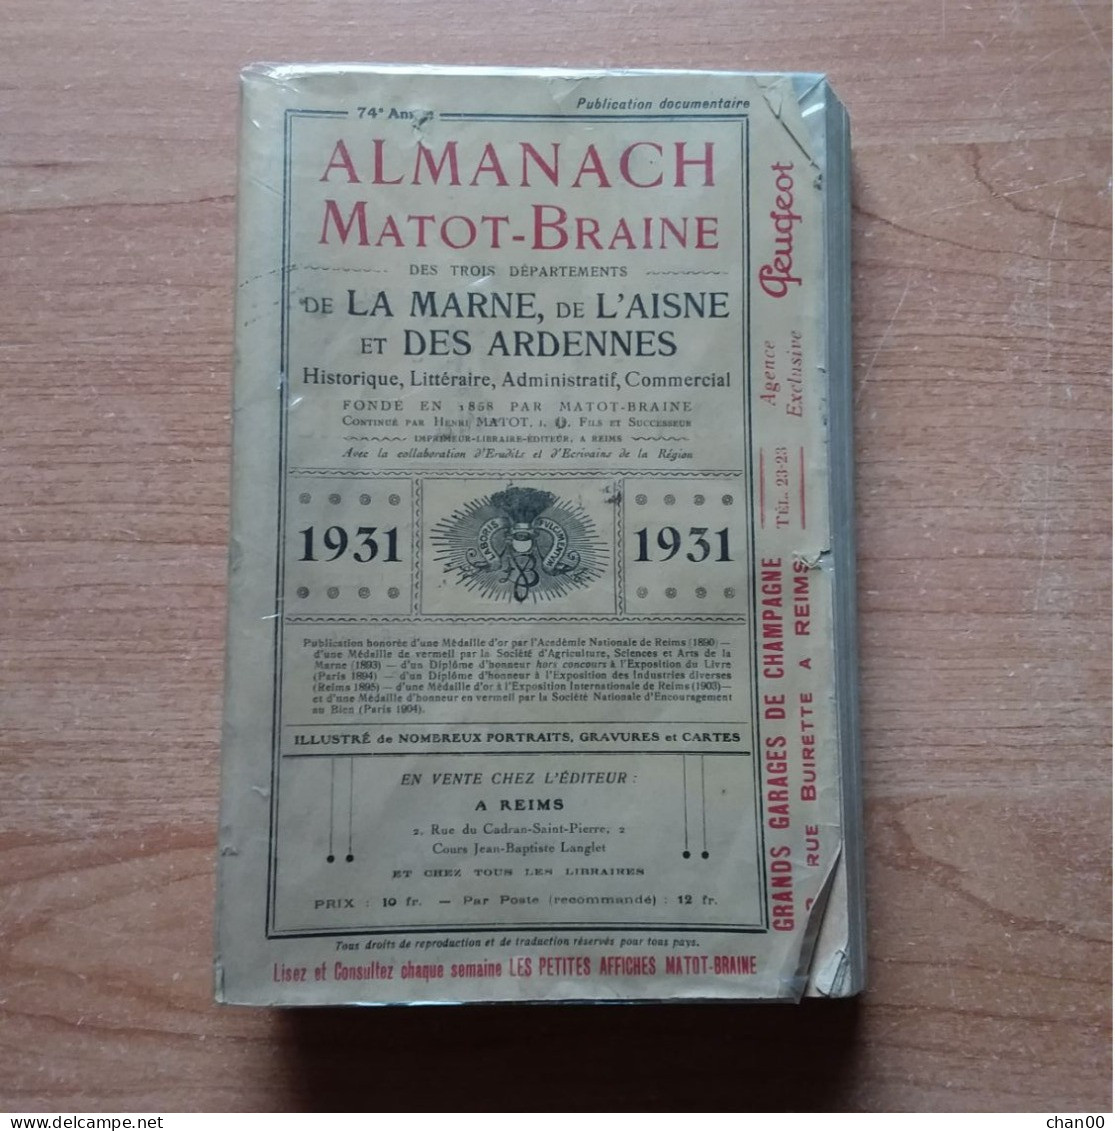 ALMANACH MATOT-BRAINE 1931 Marne, Aisne, Ardennes - Picardie - Nord-Pas-de-Calais